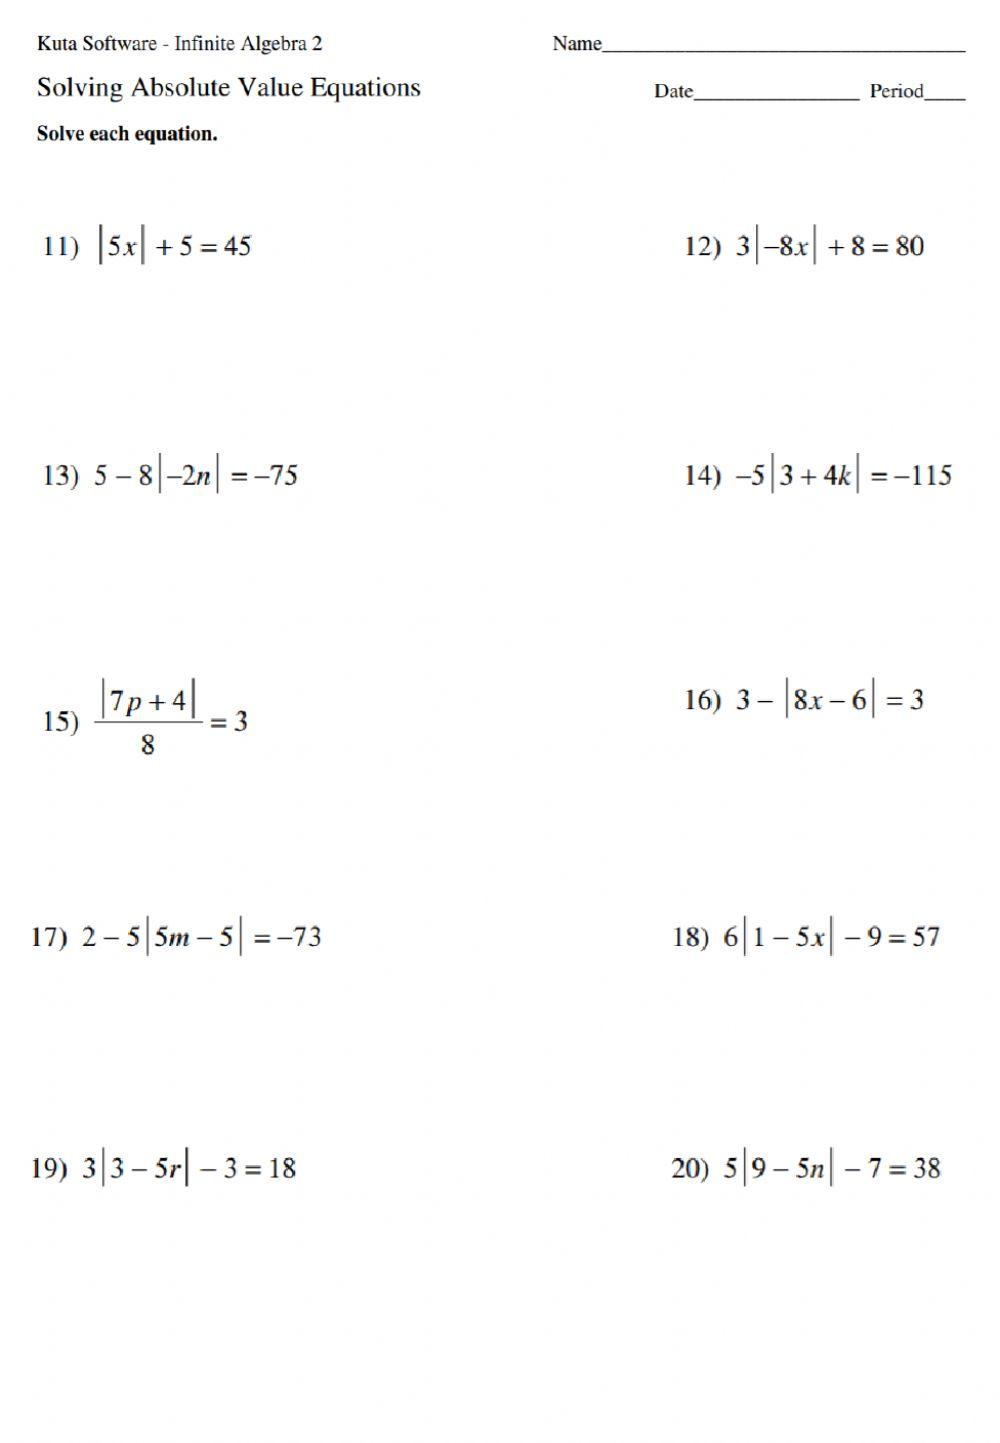 حل معادلات القيمة المطلقة 2